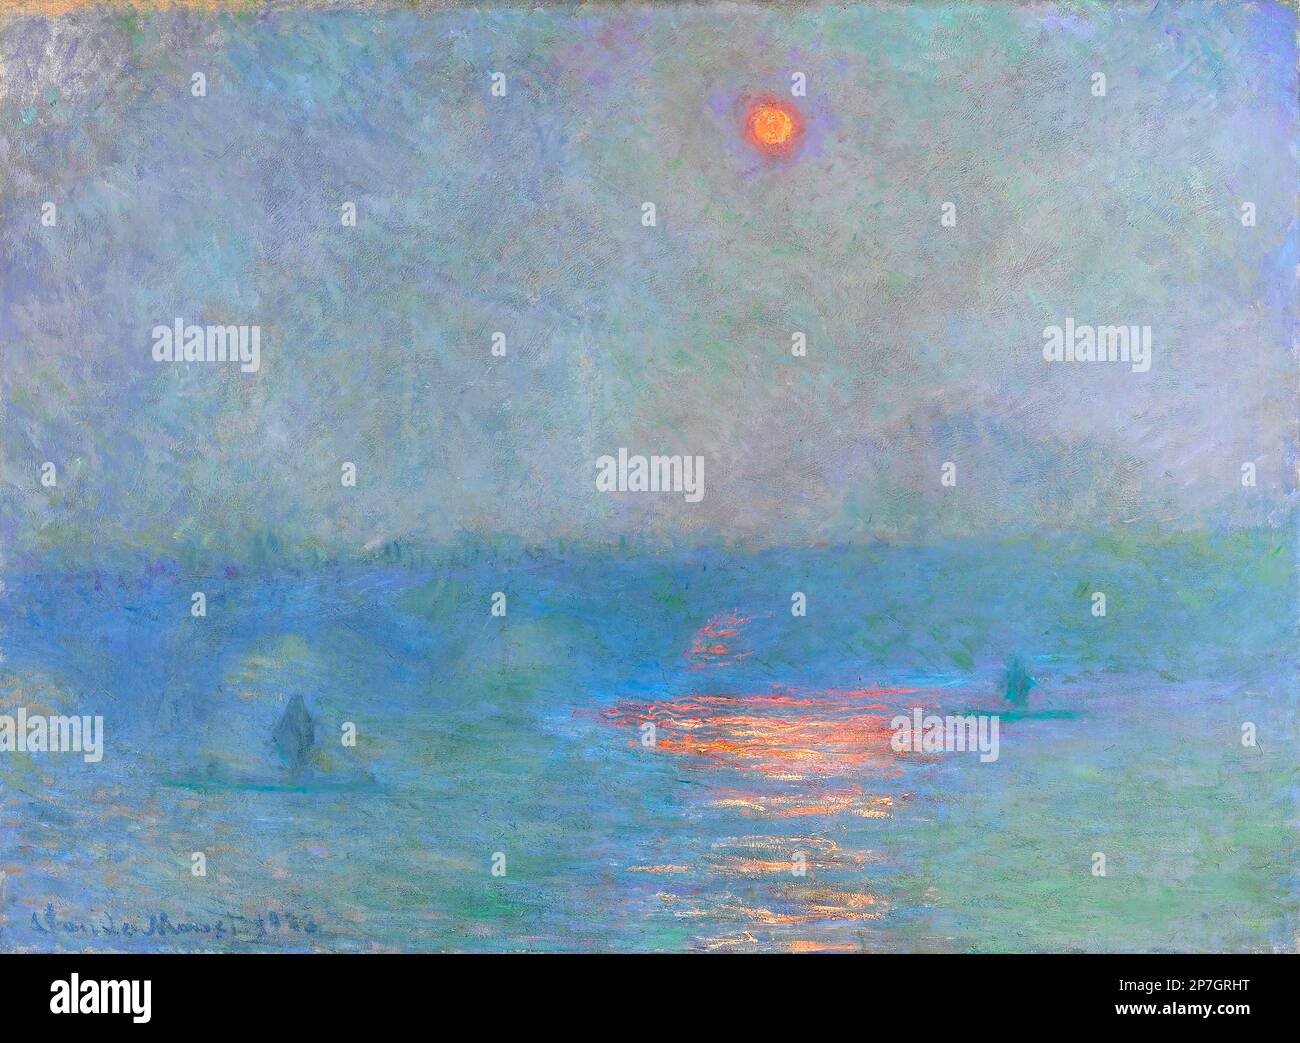 Waterloo Brücke. Waterloo Bridge: Einfluss des Sonnenlichts im Nebel von Claude Monet (1840-1926), Ol auf Leinwand, 1903 Stockfoto